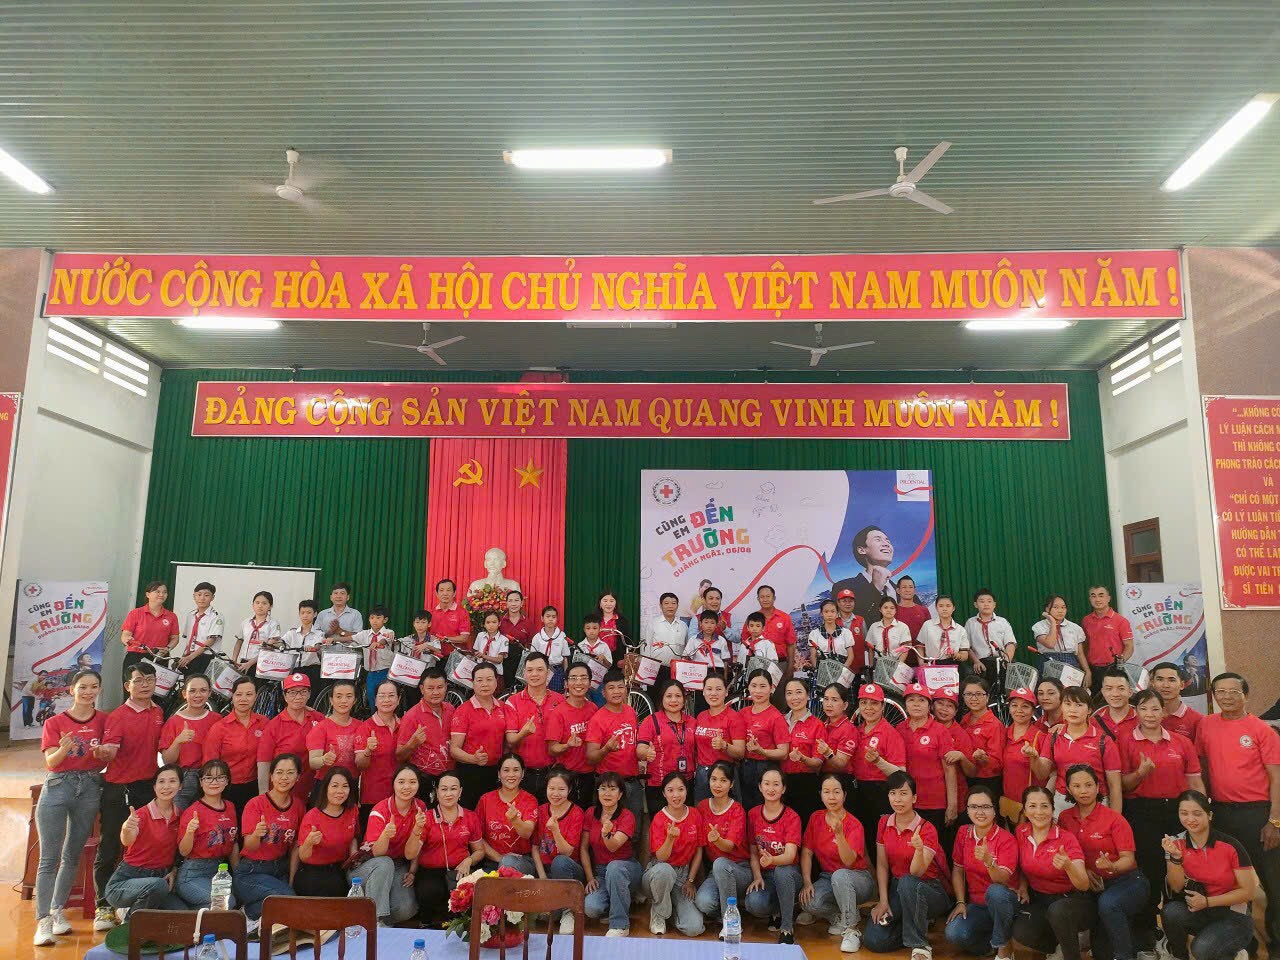 Hội Chữ thập đỏ tỉnh và Công ty TNHH Bảo hiểm nhân thọ Prudential Việt Nam nhằm hỗ trợ các em học sinh có hoàn cảnh khó khăn, tiếp tục đến trường và học tập tốt.